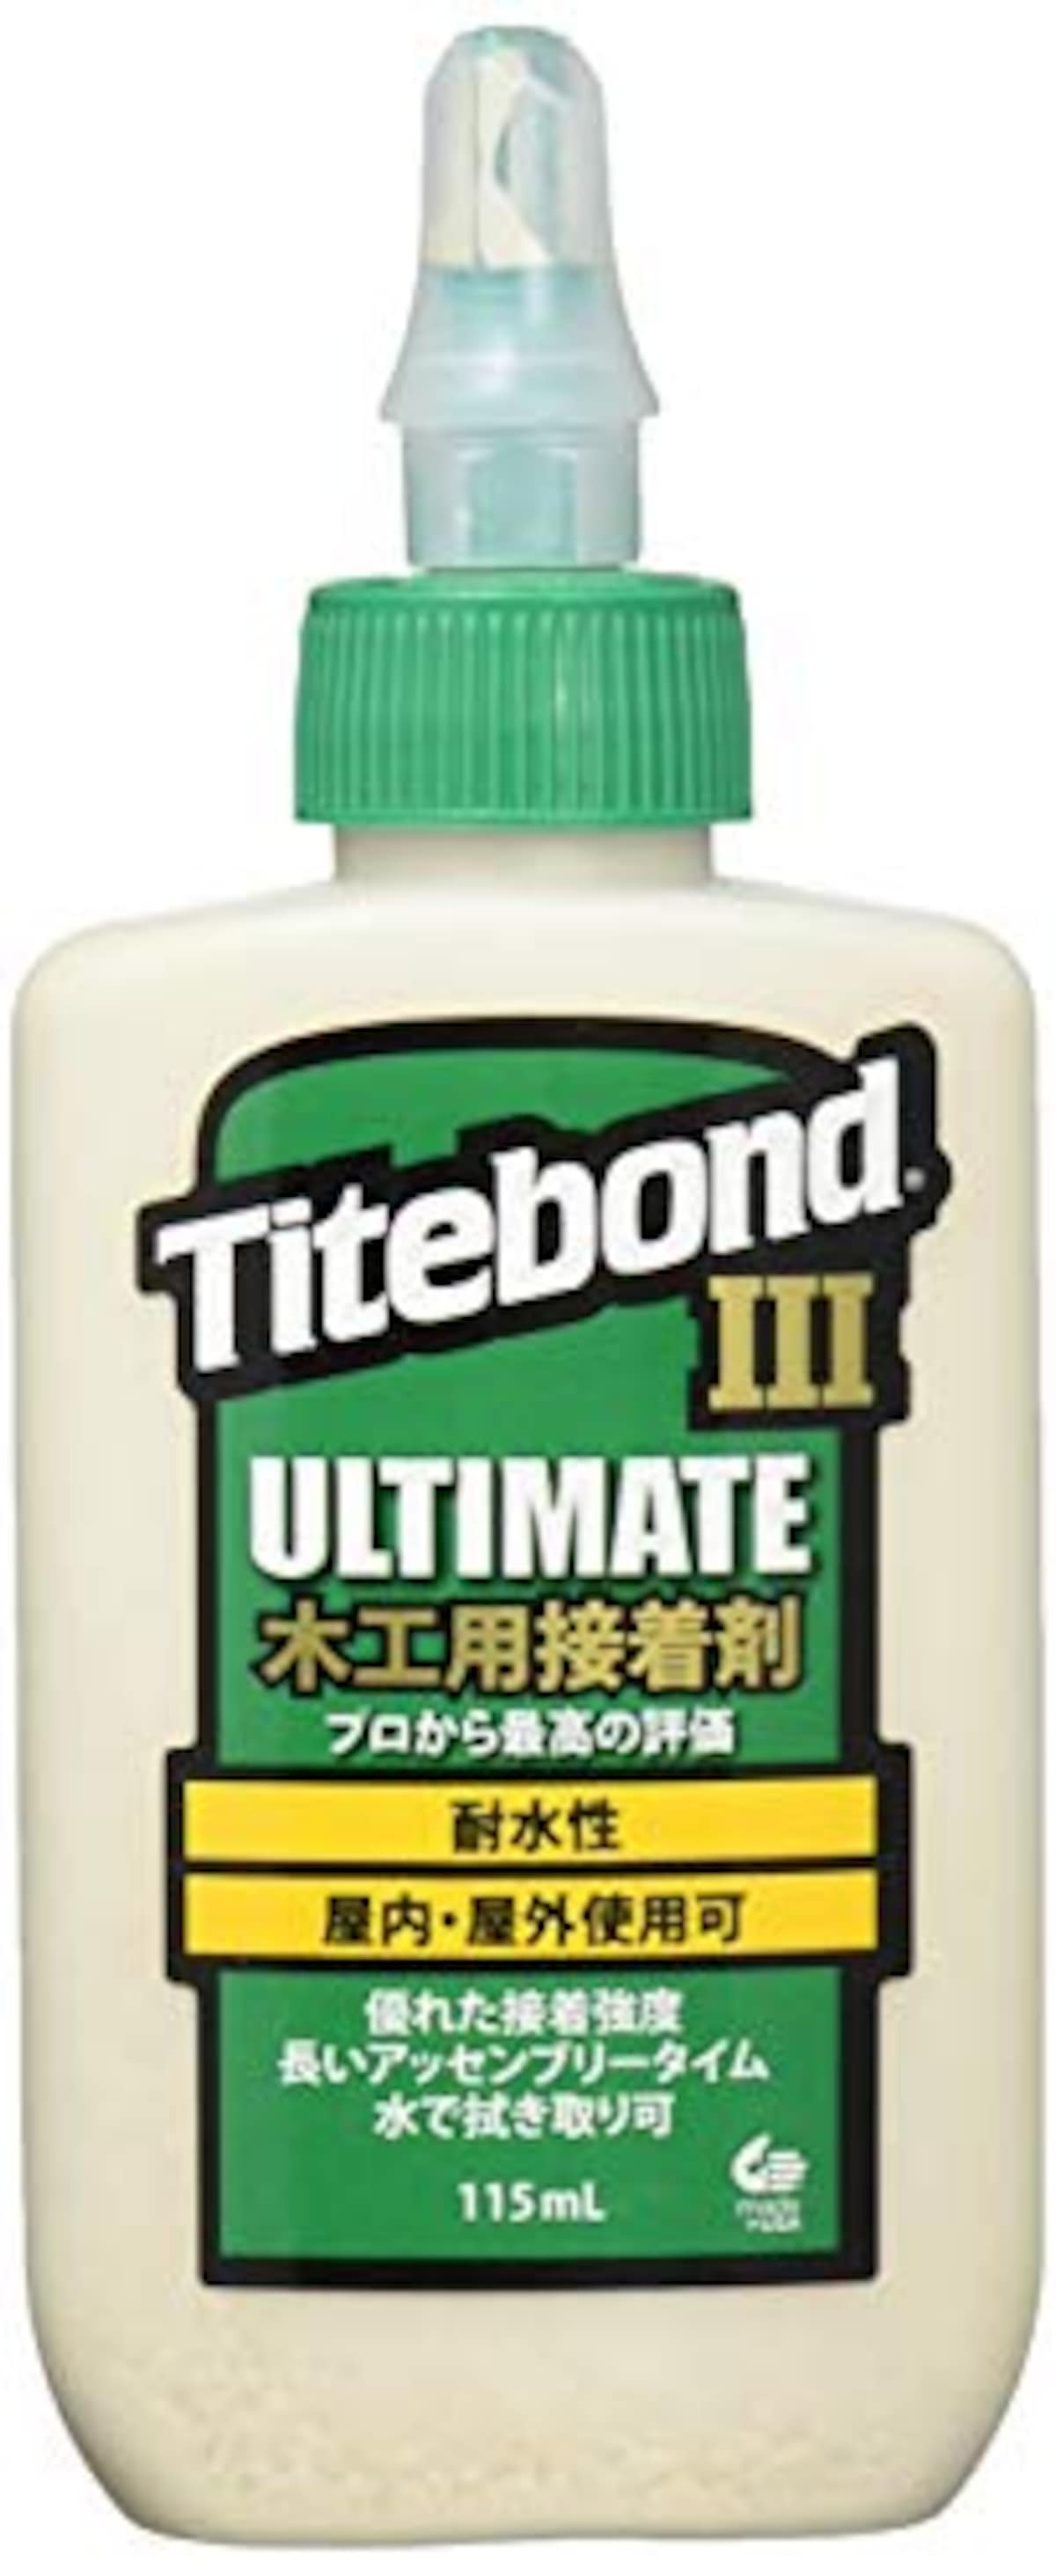 タイトボンド3 ULTIMATE 木工用接着剤